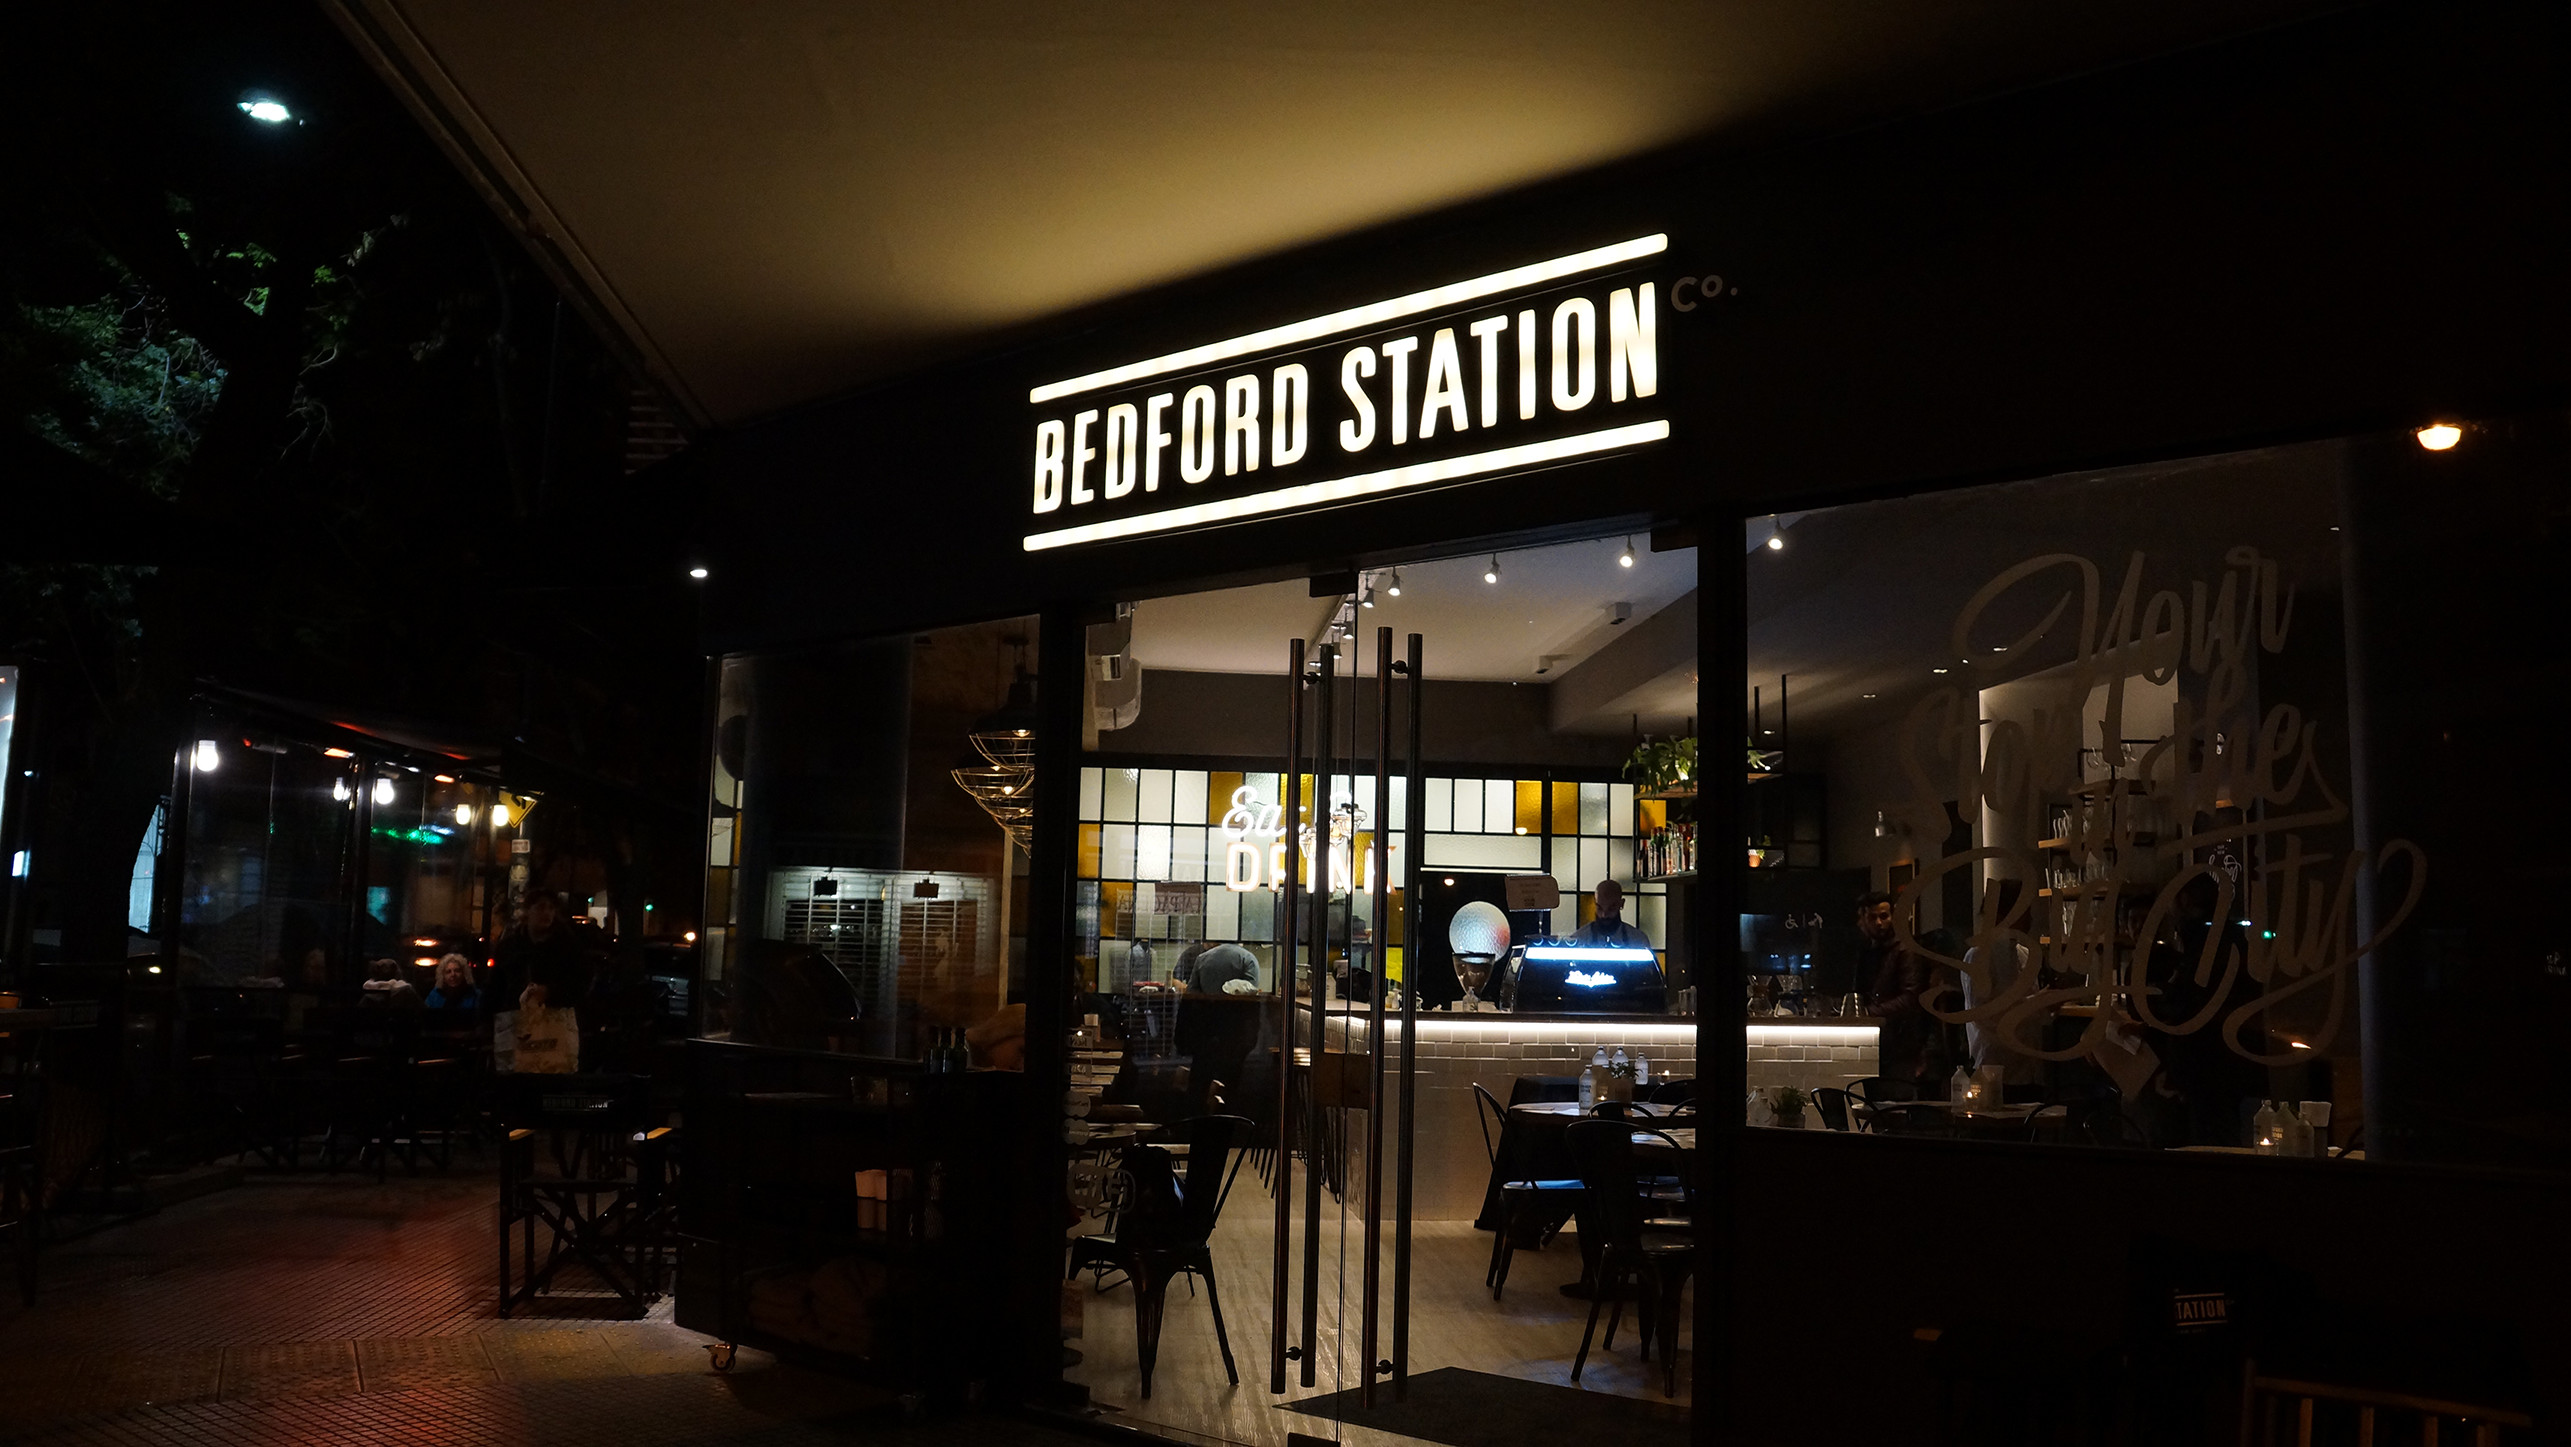 BedFord Station 7